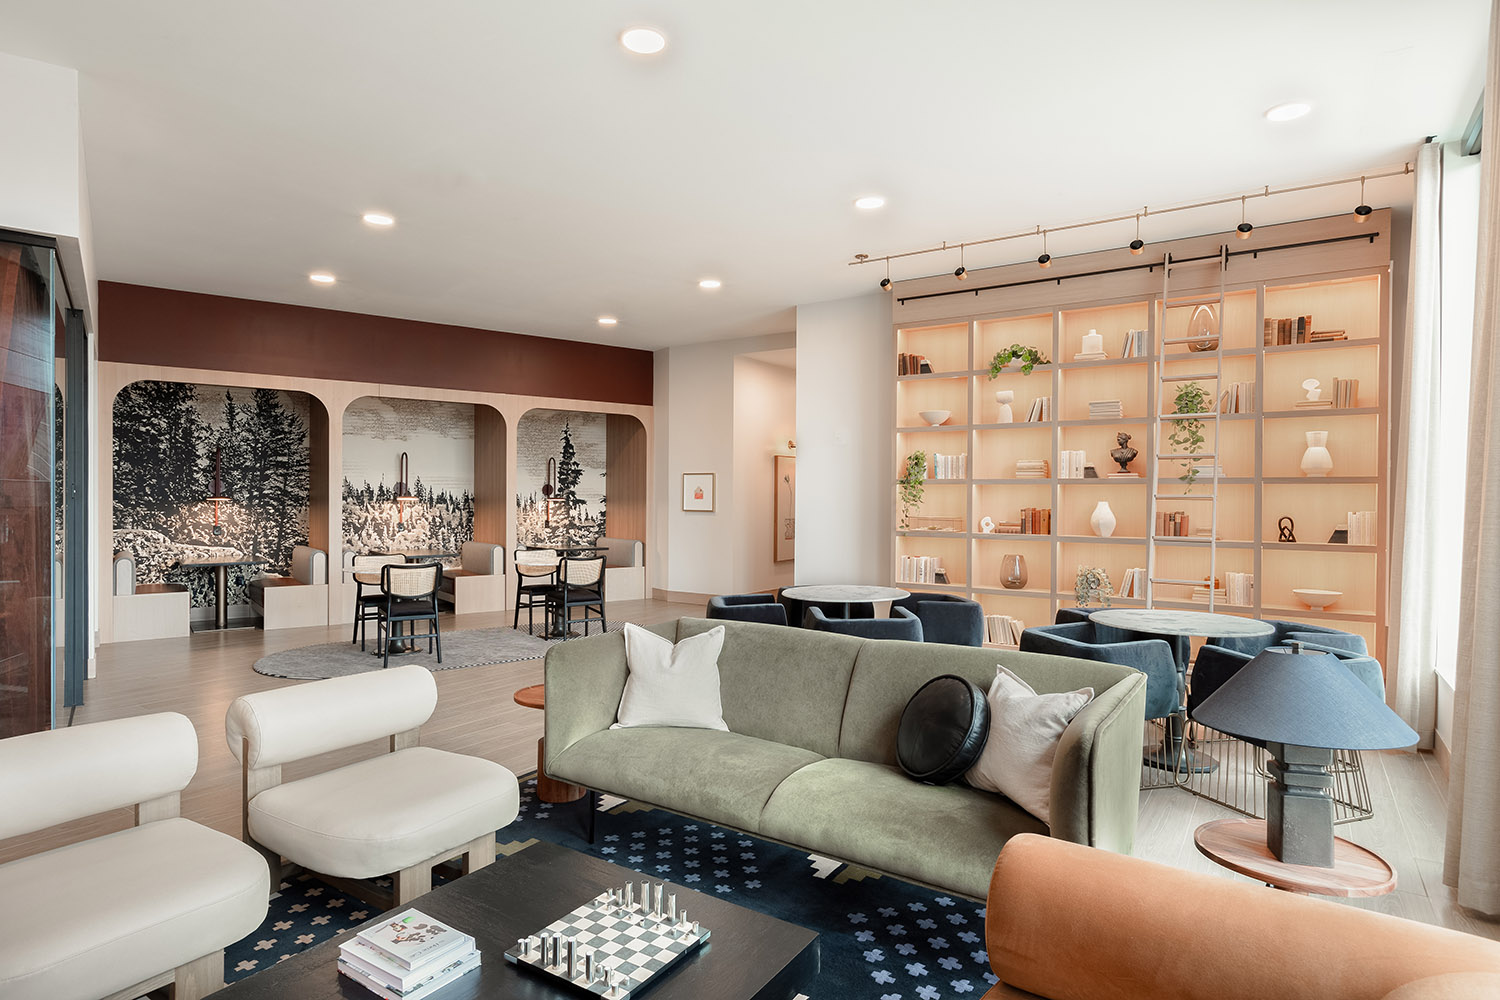 apartment lounge space interior design